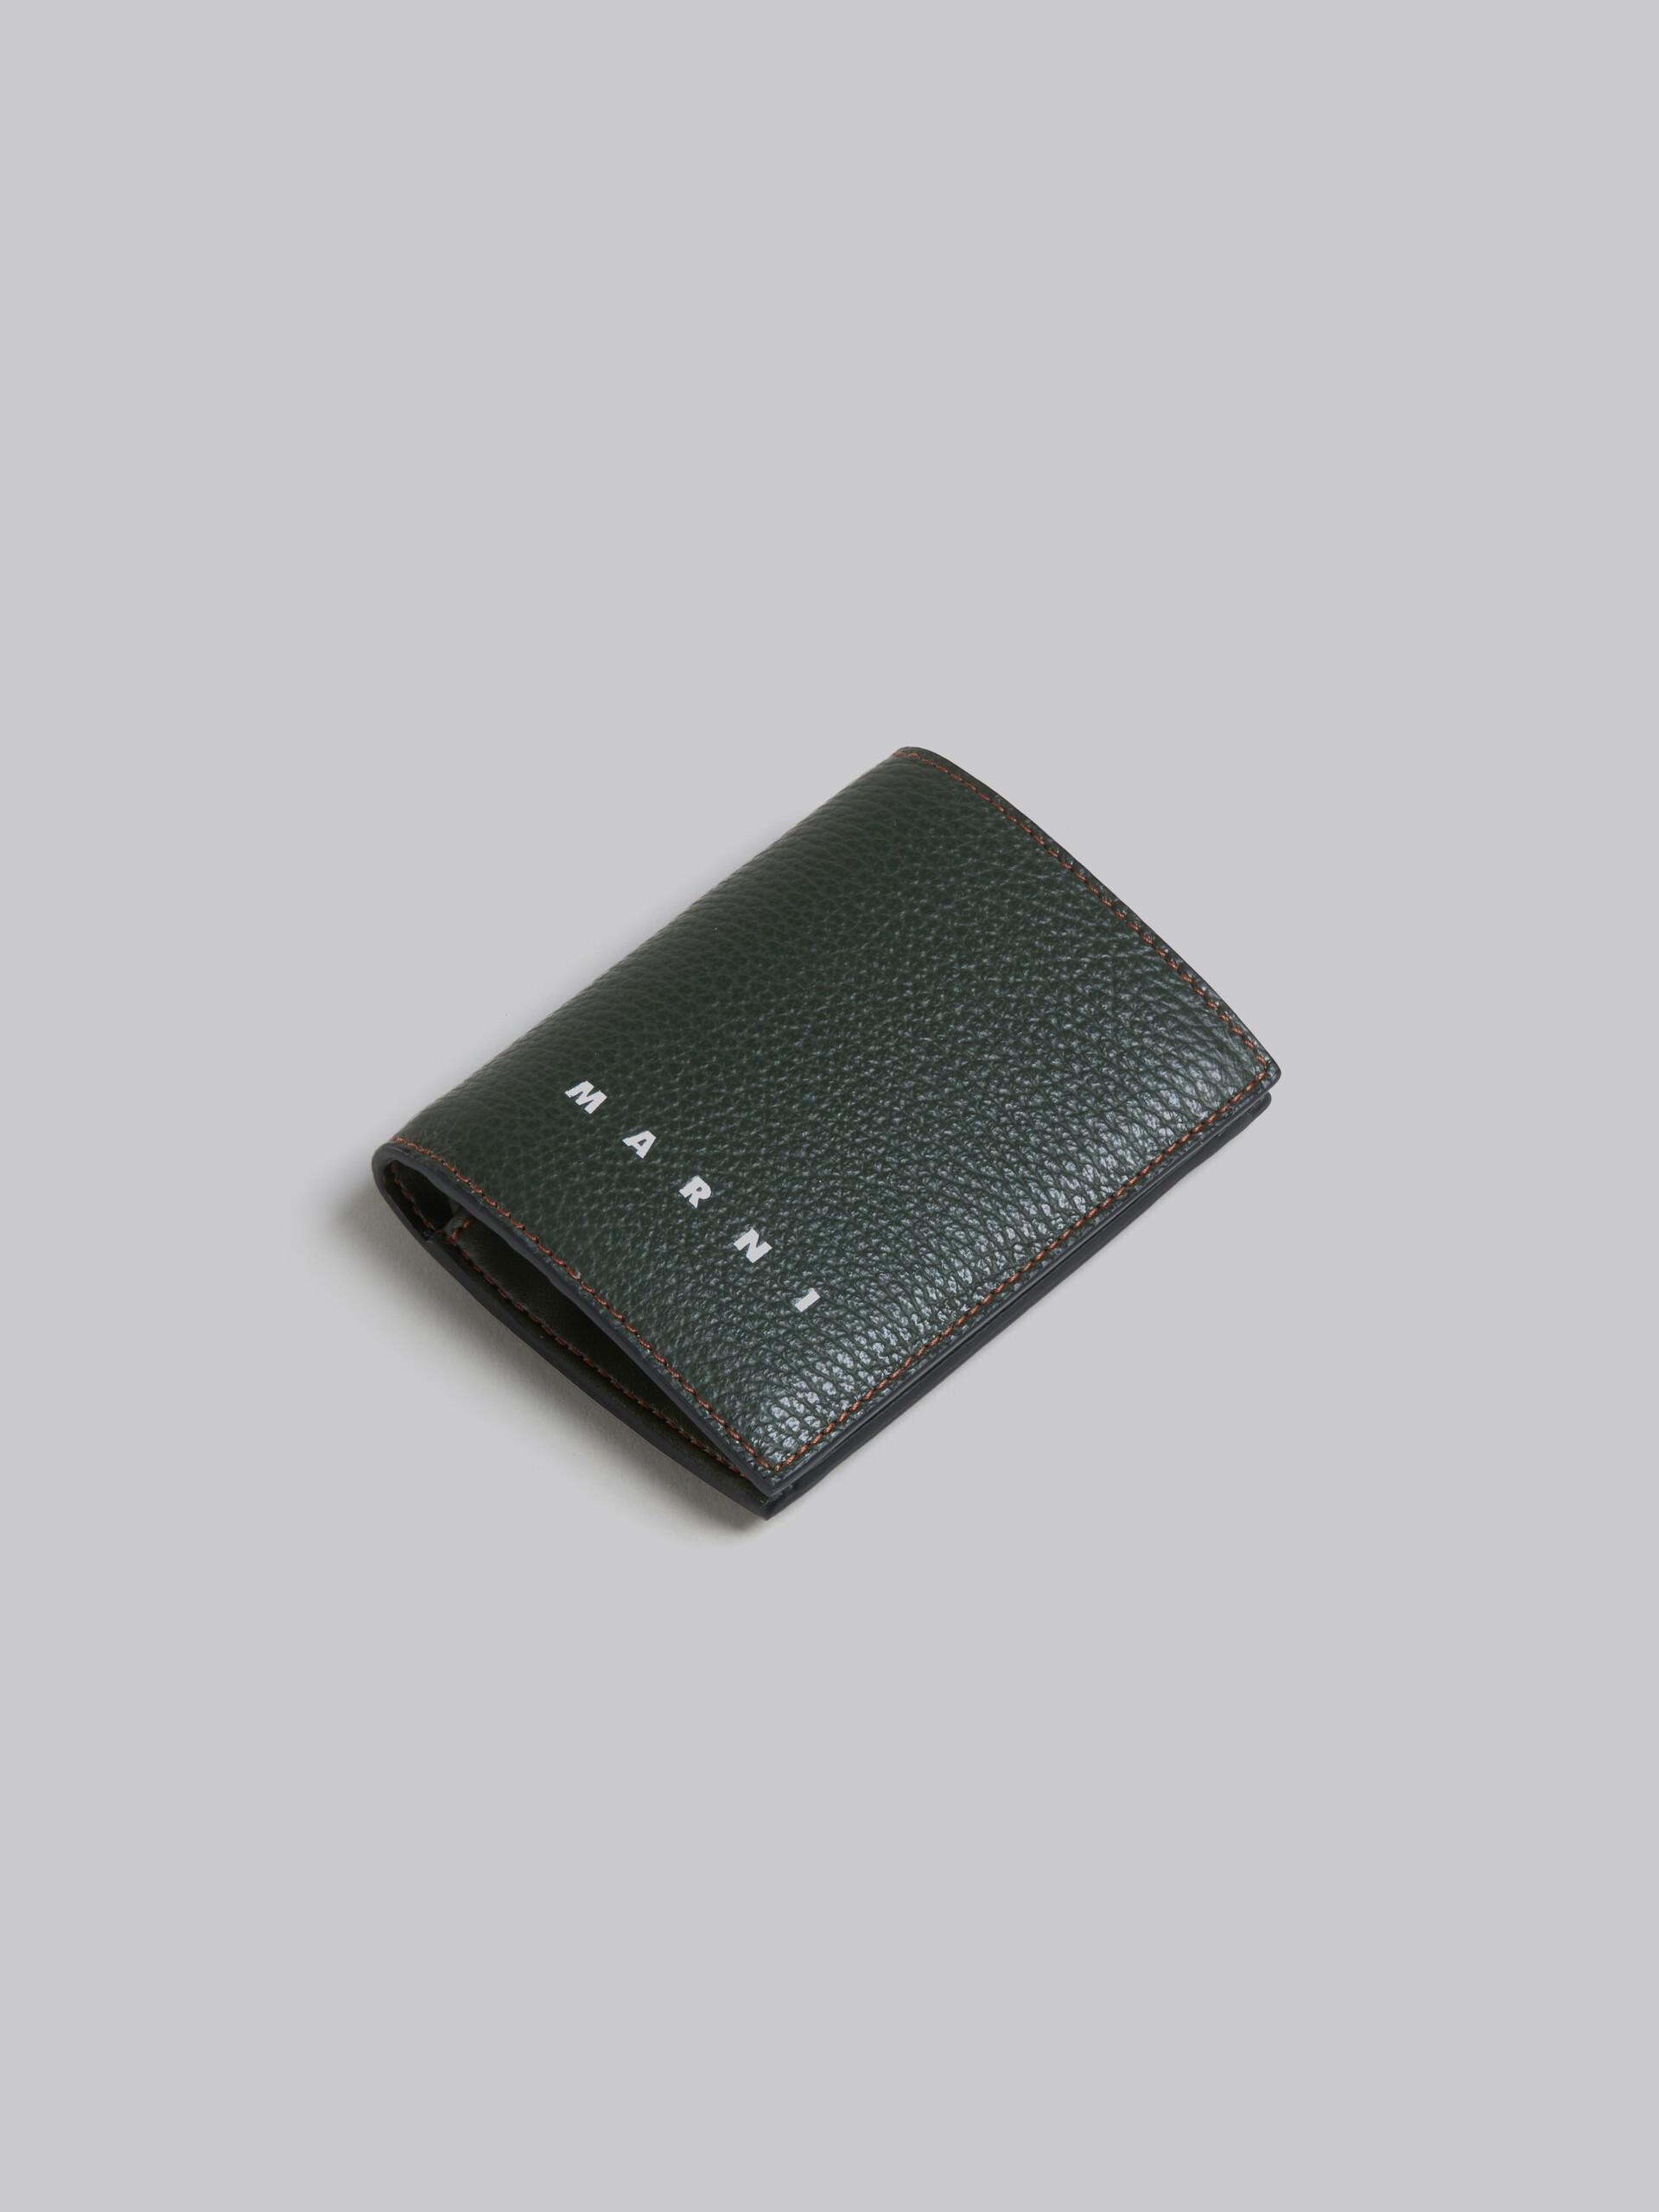 MARNI マルニ レザー製二つ折りカードケース オリーブグリーン付属品箱ありギャランティーあり